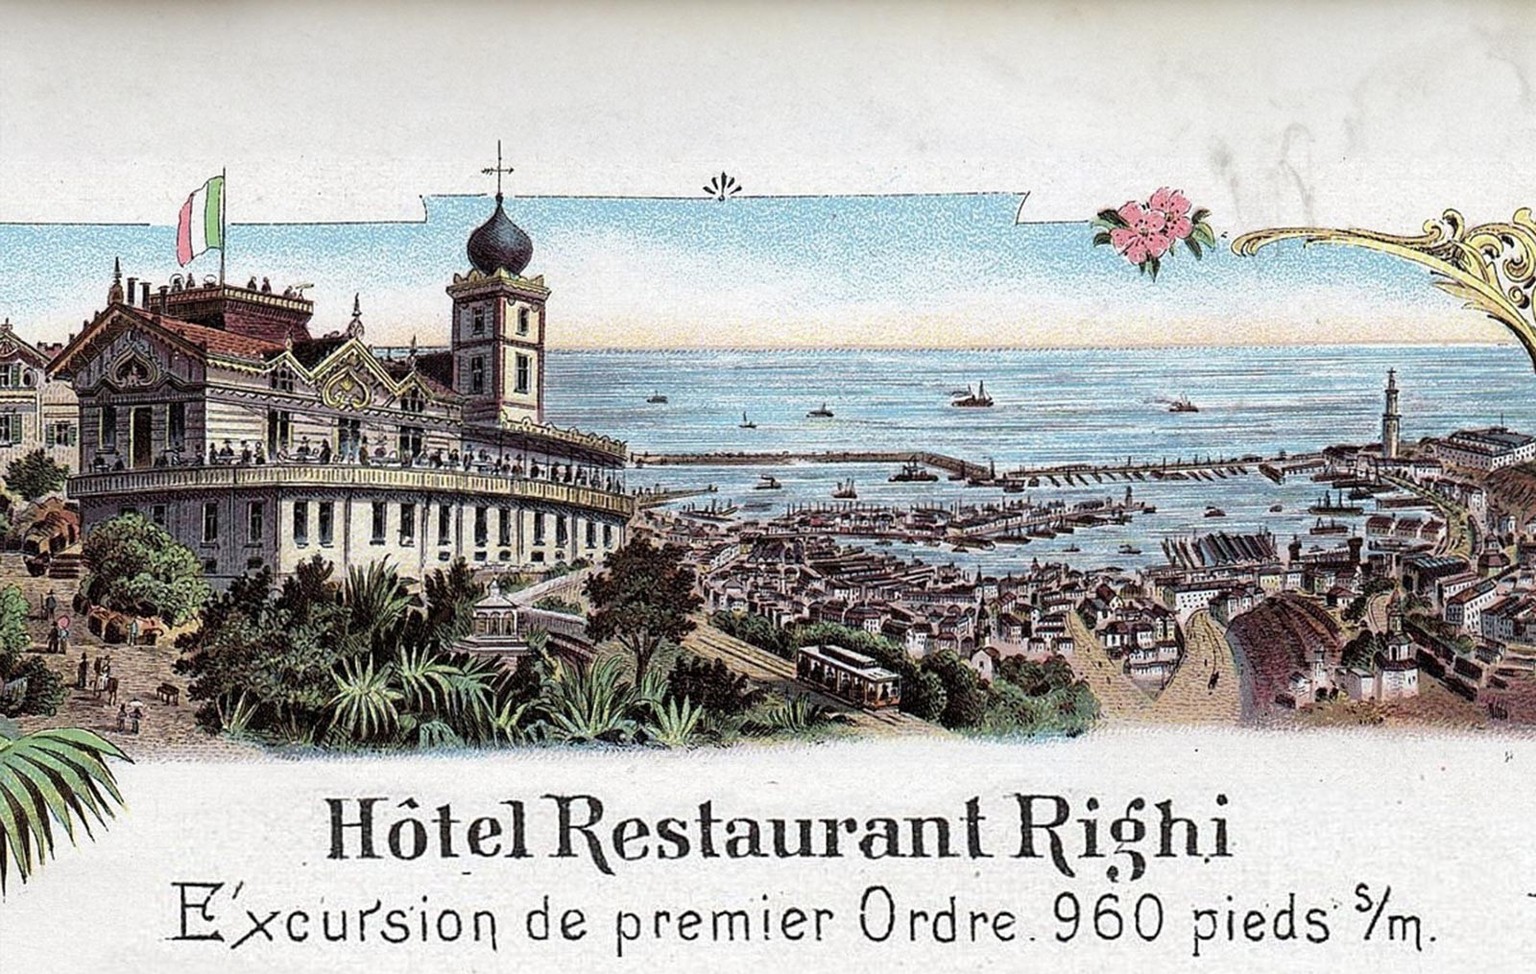 Carte postale du funiculaire Righi de Gênes, début du XXe siècle.